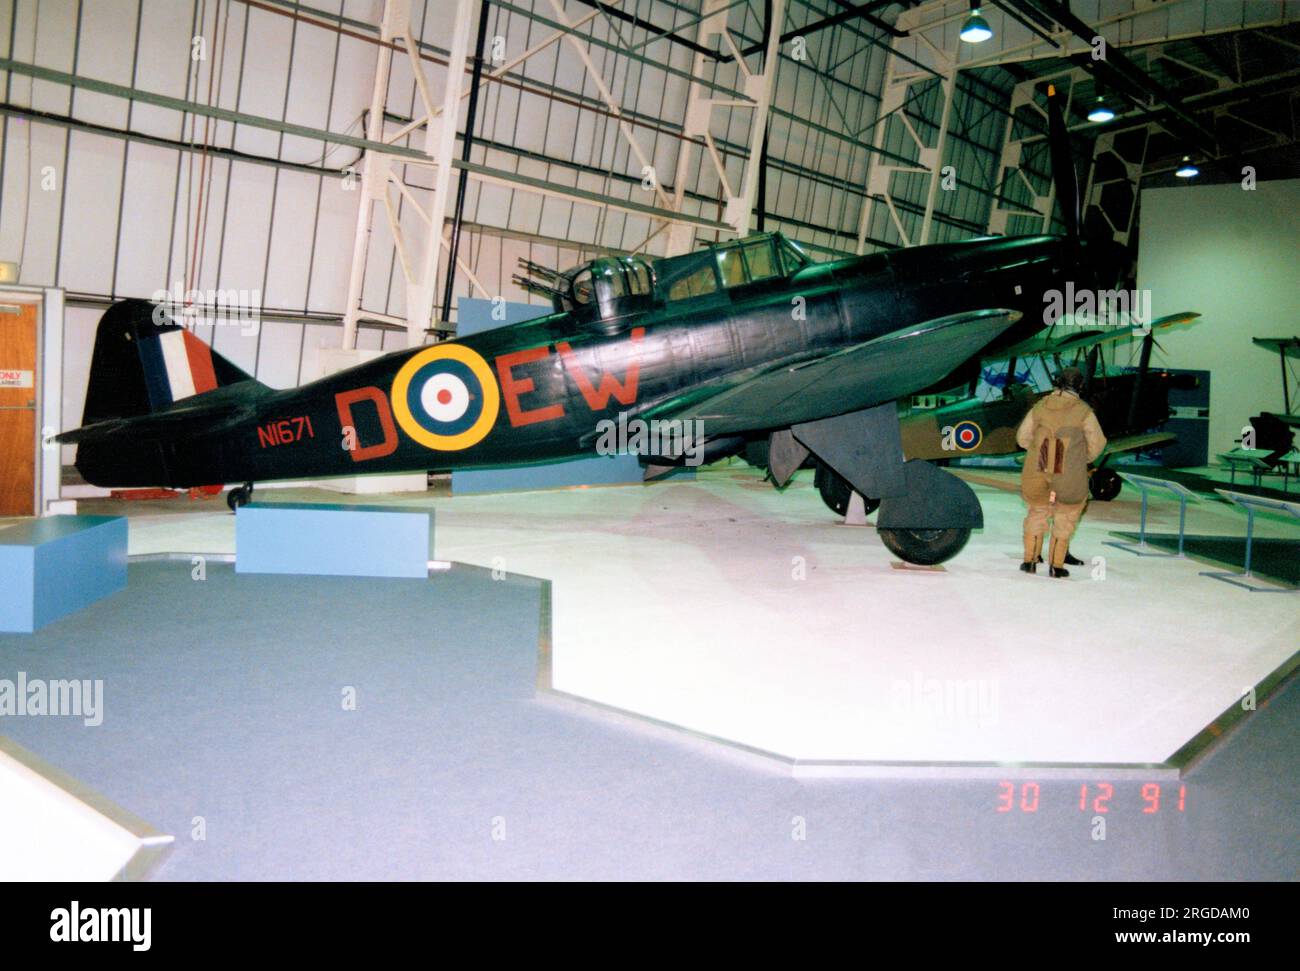 Boulton Paul Defiant F.I N1671 / D-EW, au Royal Air Force Museum, Hendon, le 30 décembre 1991. Banque D'Images